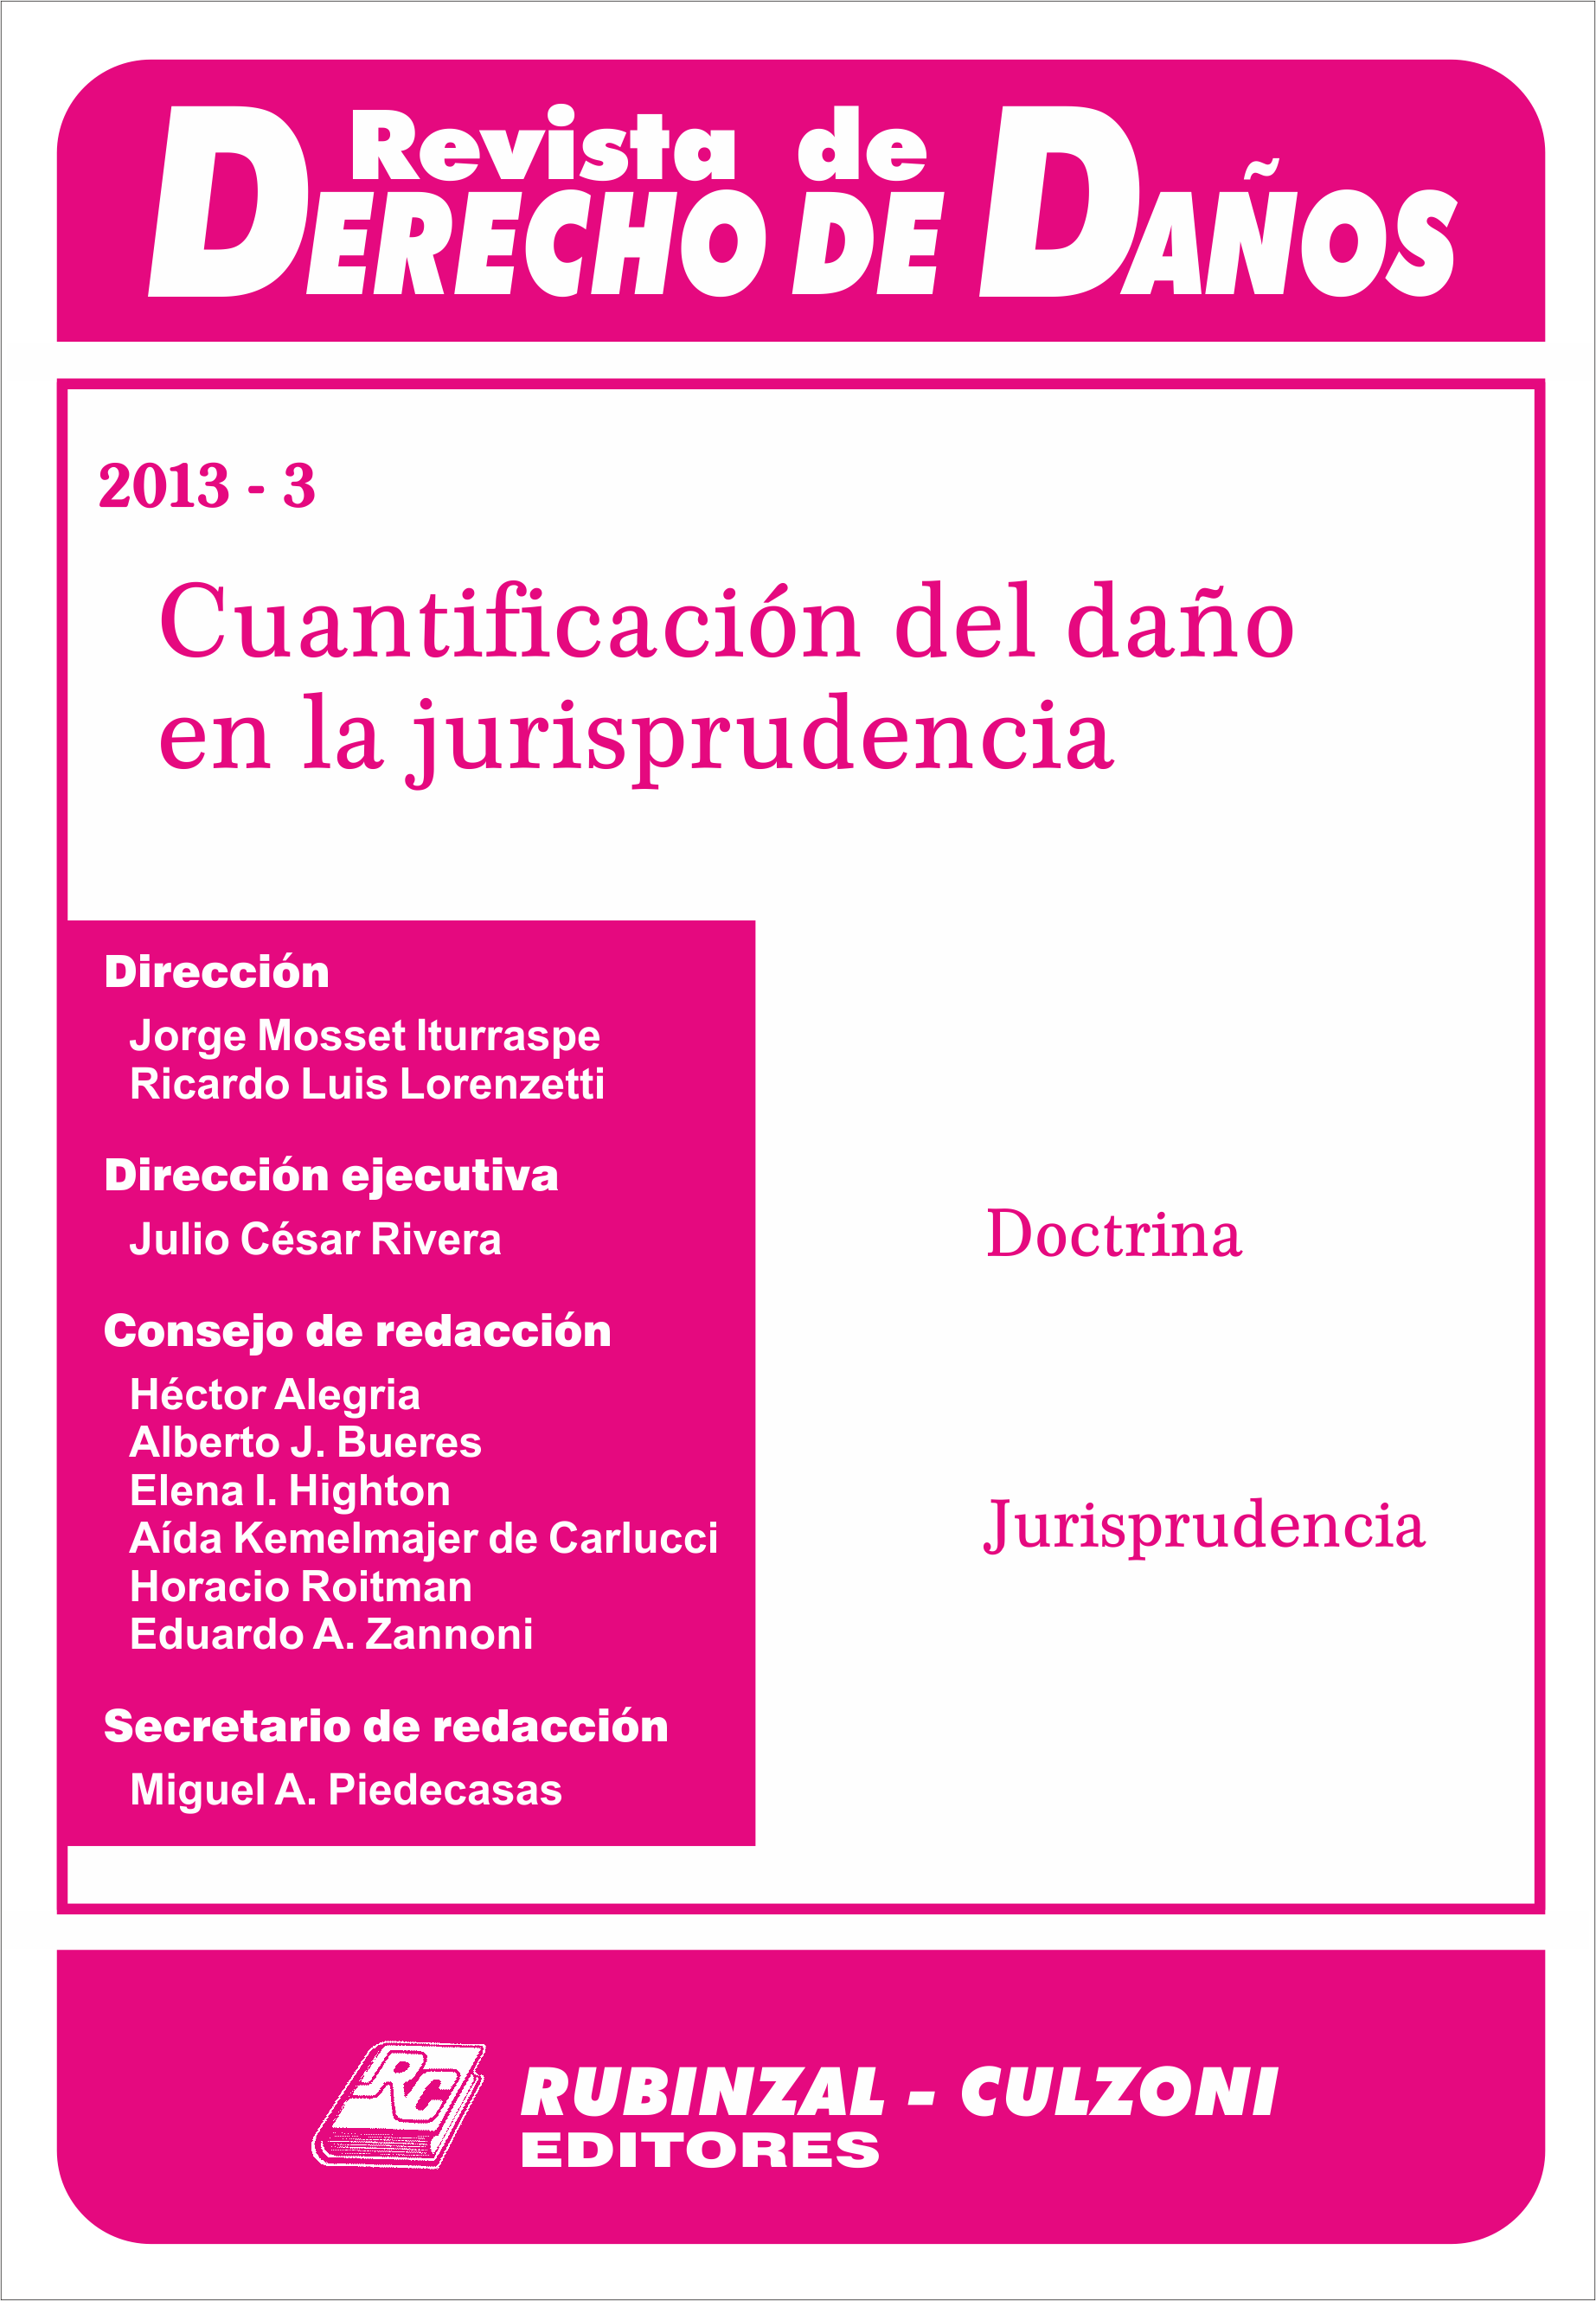 Revista de Derecho de Daños - Cuantificación del daño en la jurisprudencia